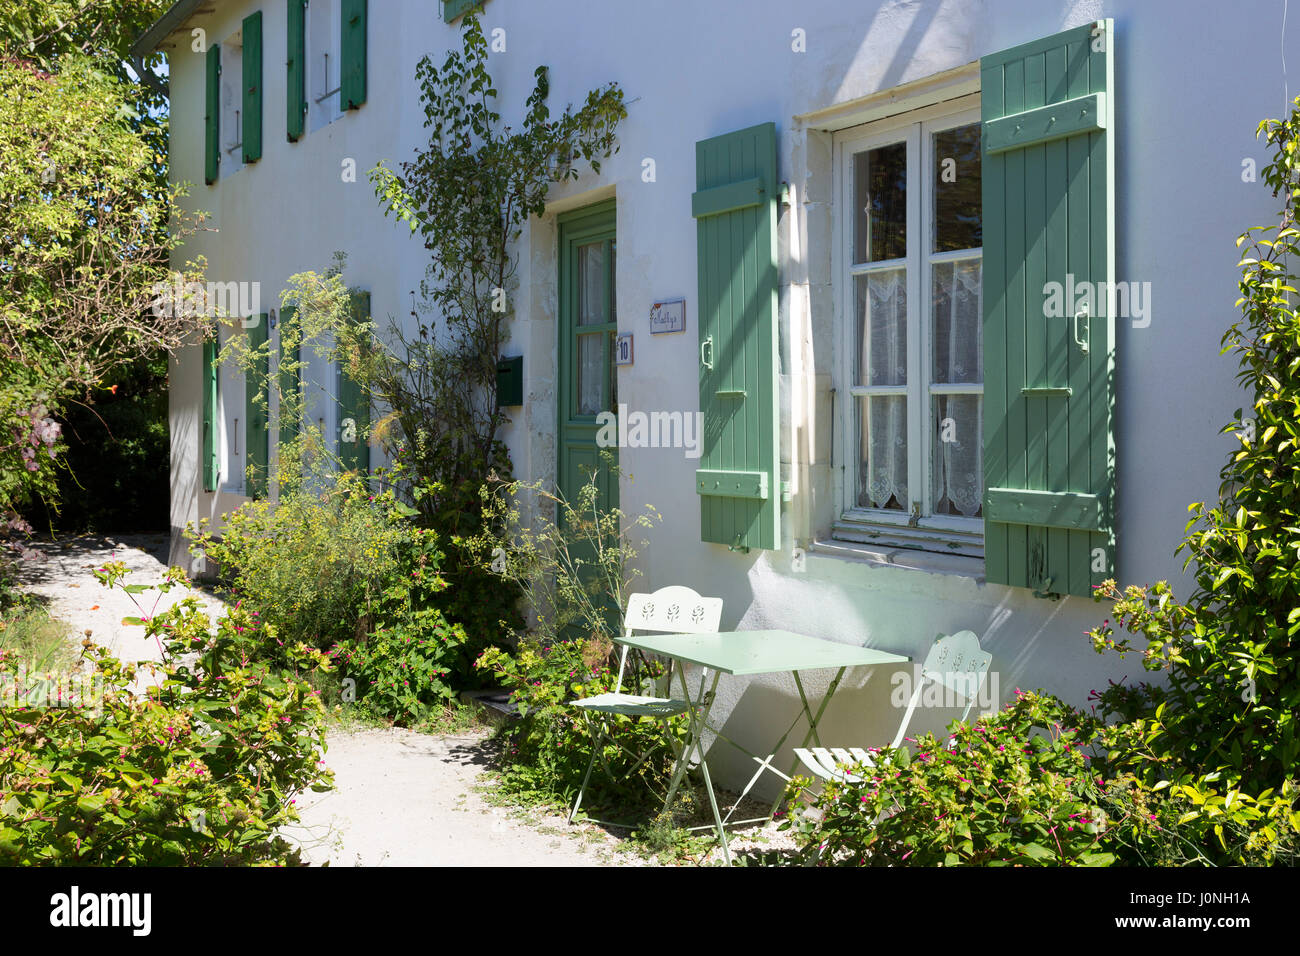 Tipica casa caratteristico con persiane di architettura tradizionale, dipinto in colore verde chiaro a Les Portes en Re, Ile de Re, Francia Foto Stock